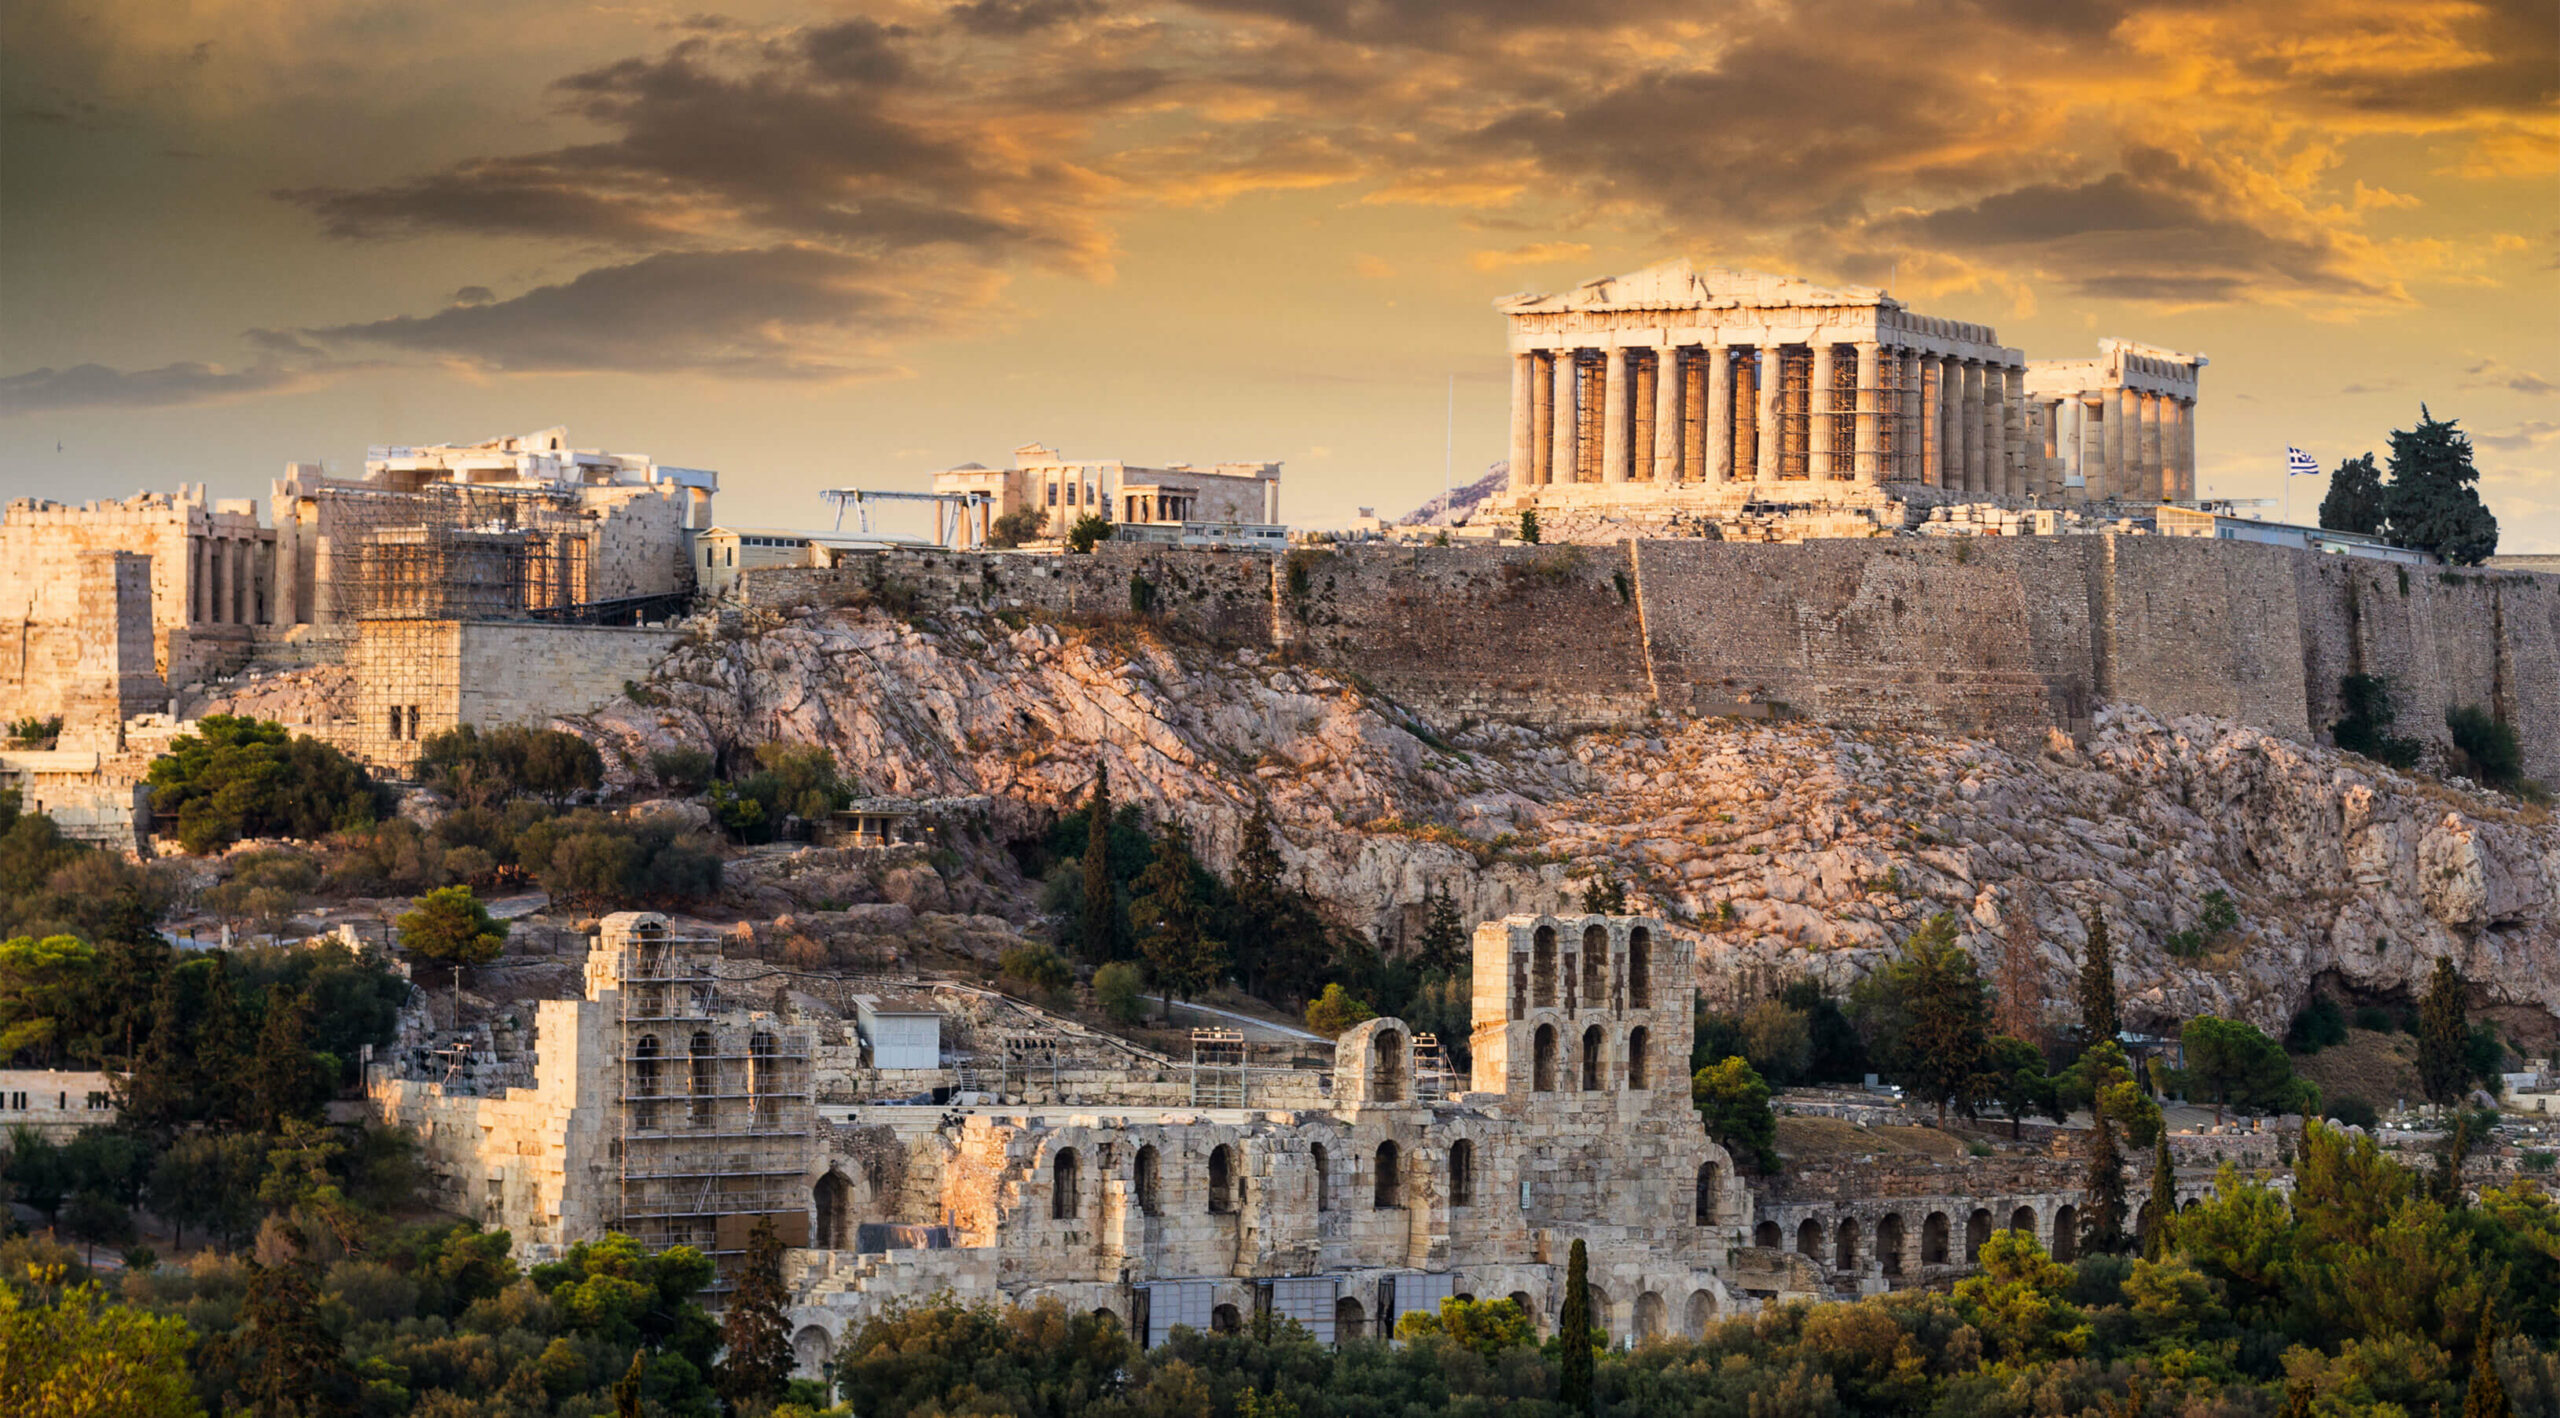 GREECE कंपनी एथेनिक क्रिएशन बनाने वाली कंपनी ग्रीस ओपनिंग बैंक अकाउंट ग्रीसी डोमिसाइल एथेंस